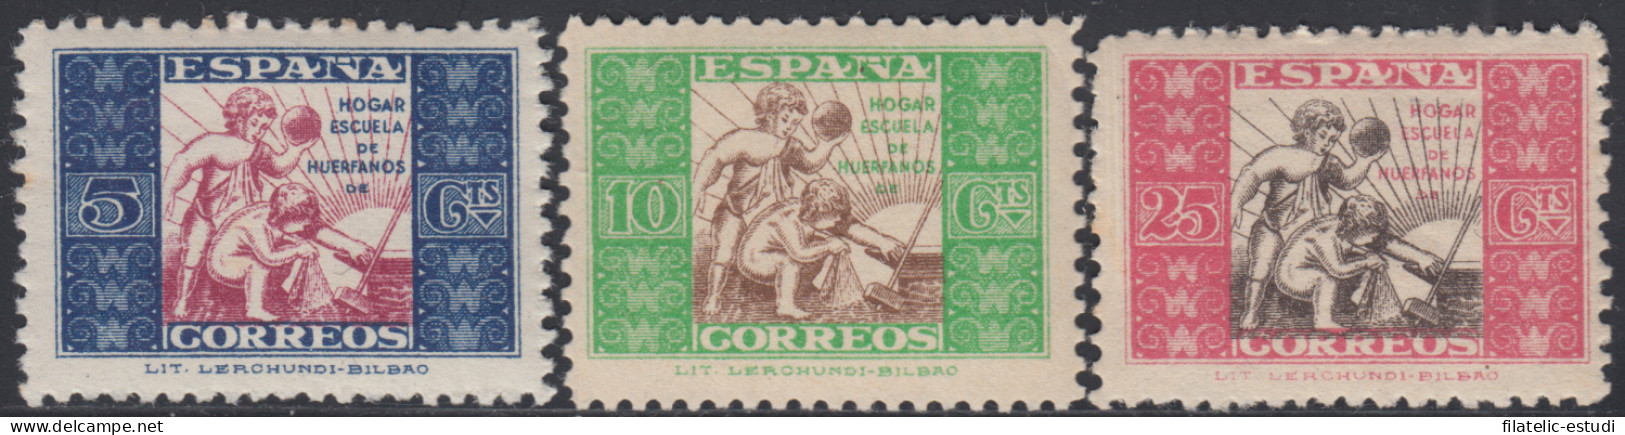 España Spain Beneficencia Huérfanos Correos 9/11 1937 Infancia MH - Wohlfahrtsmarken